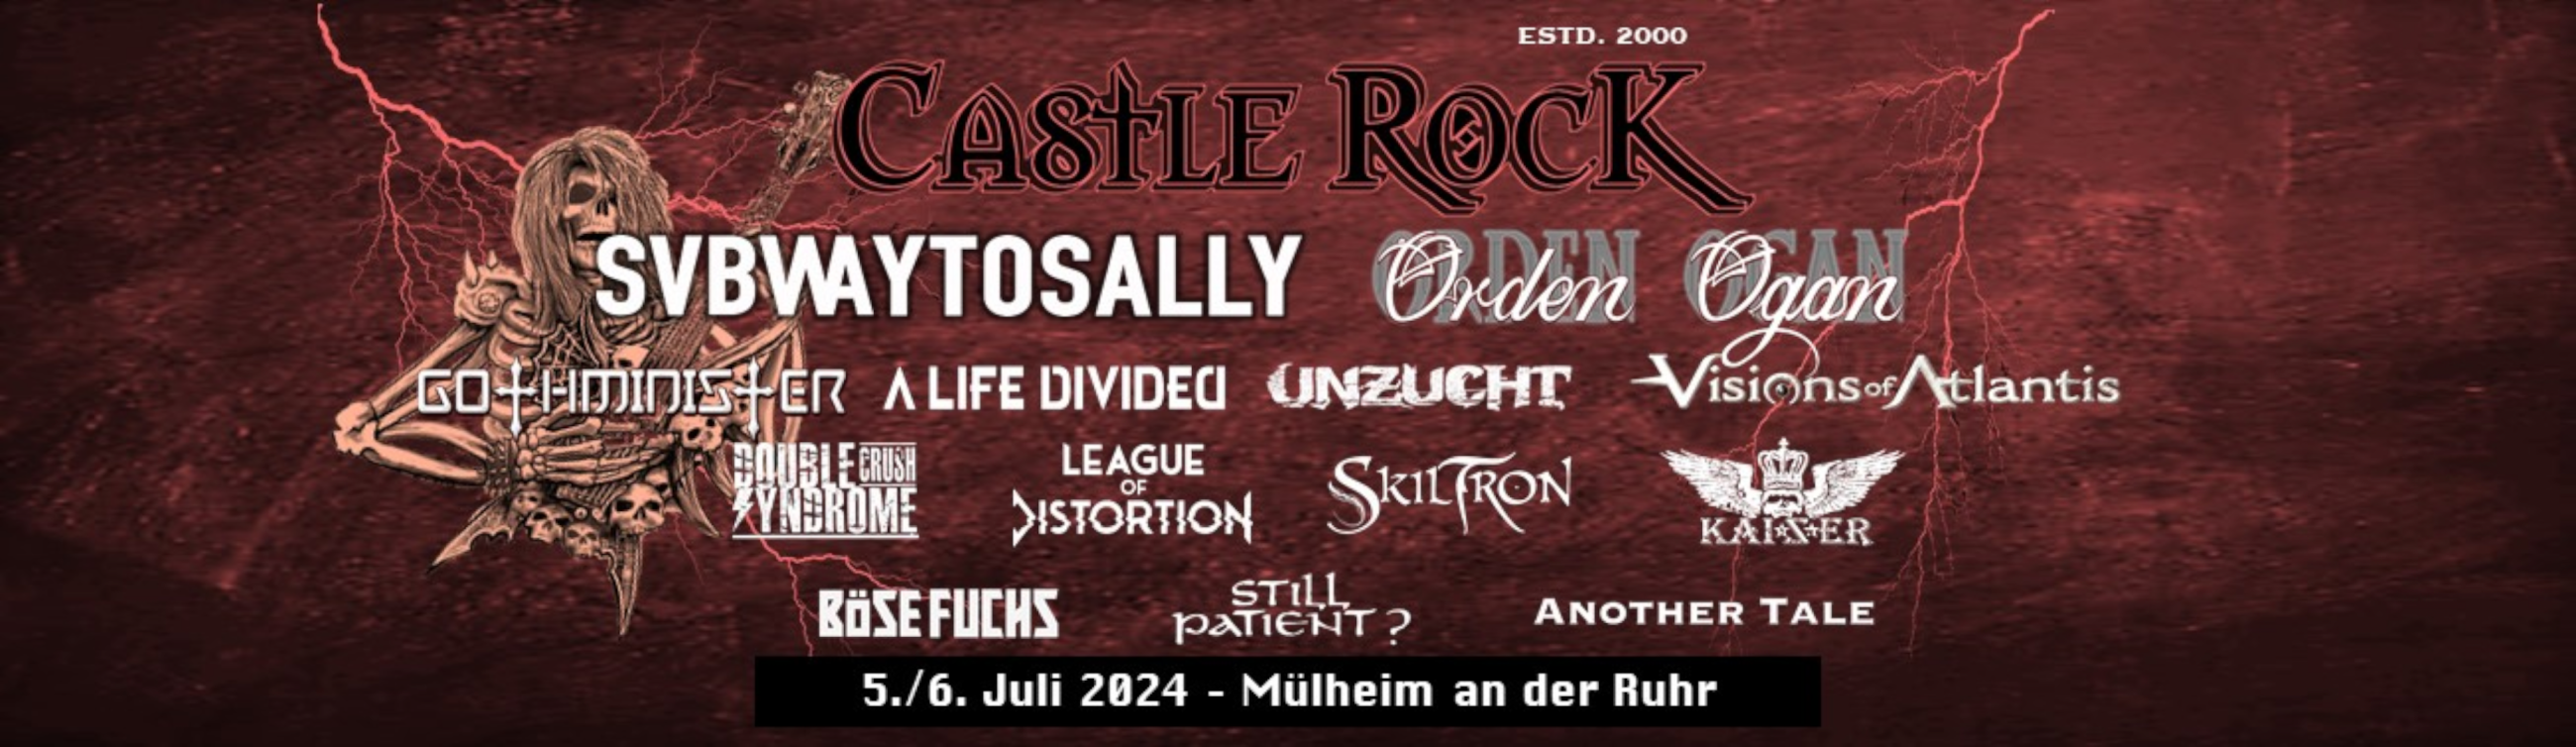 Alle Bands, die beim Castle Rock Festival 2024 auftreten, sind namentlich auf dem Banner genannt. 